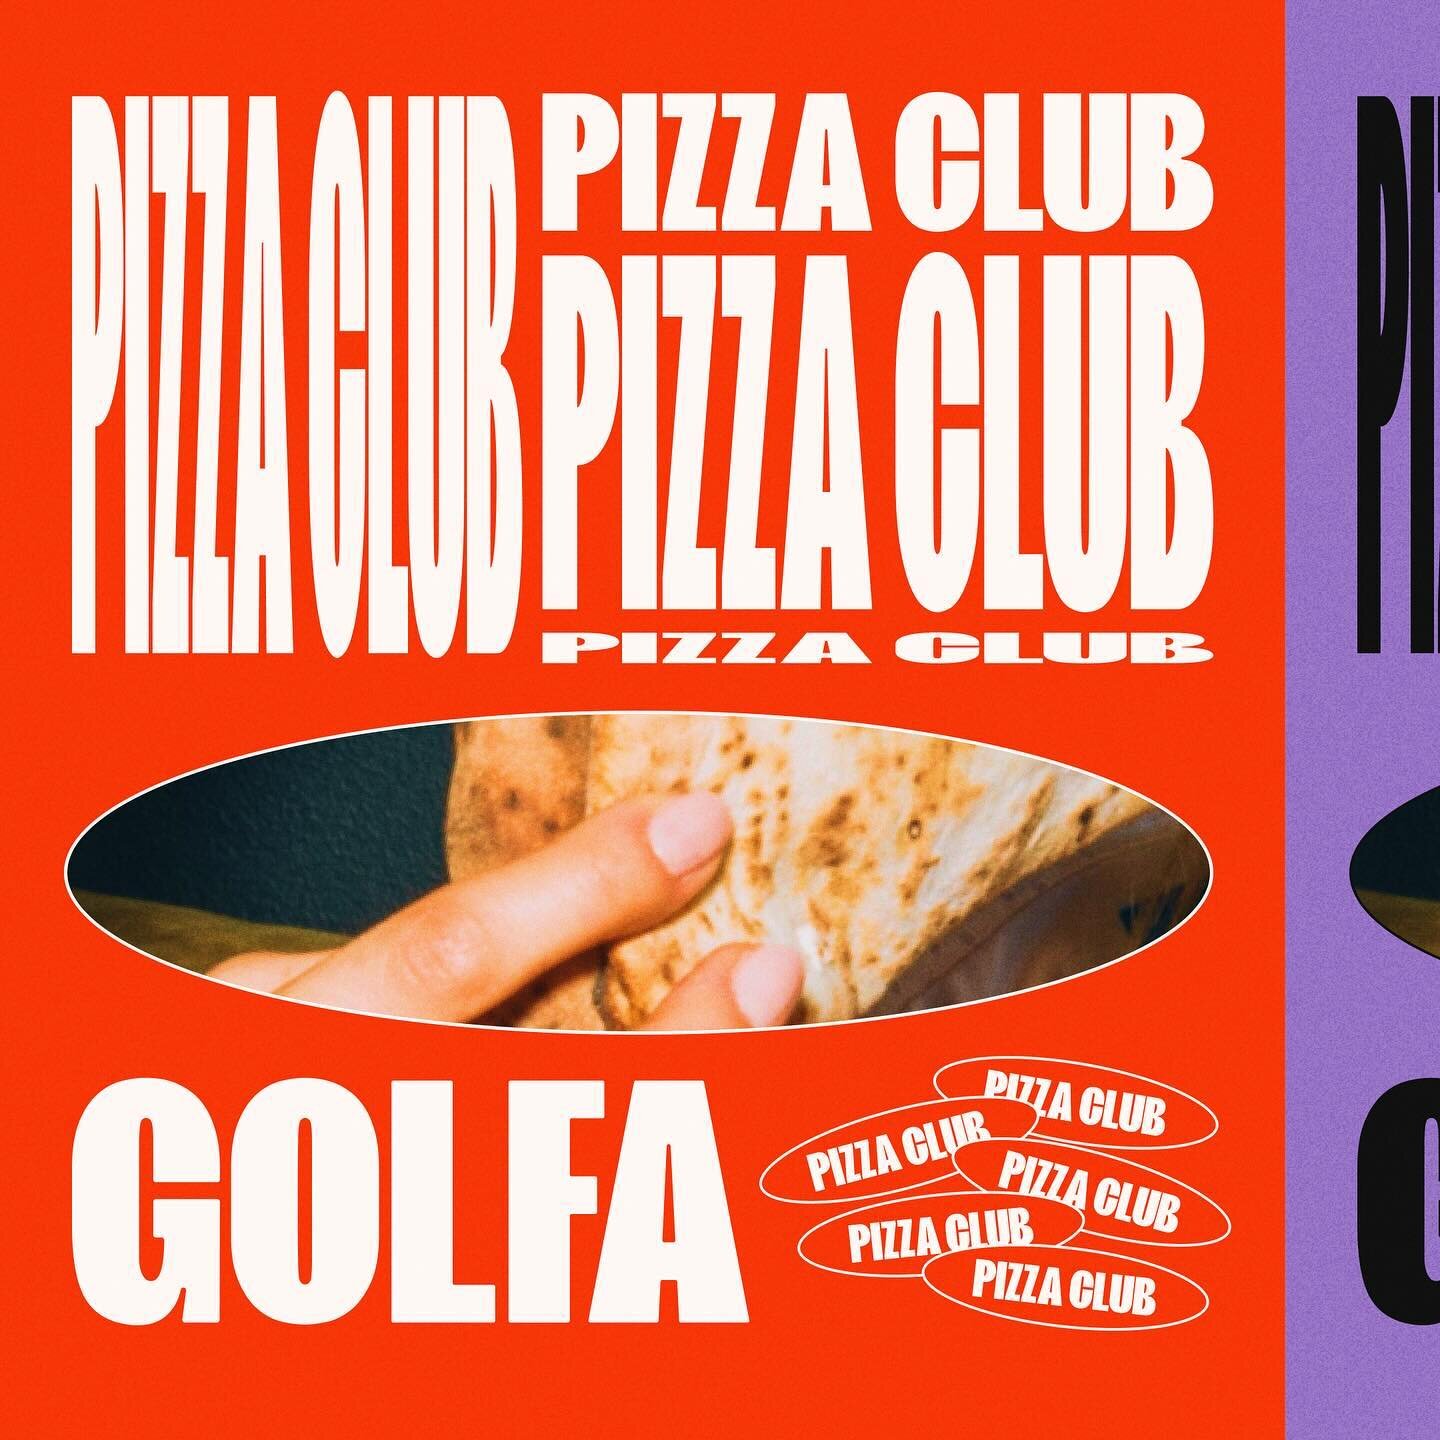 GOLFA PIZZA CLUB🍕

Nuevo proyecto de Branding que ten&iacute;a muchas ganas de compartir✨

Pueden ver el proyecto completo en la bio😌 Gracias por mirar!